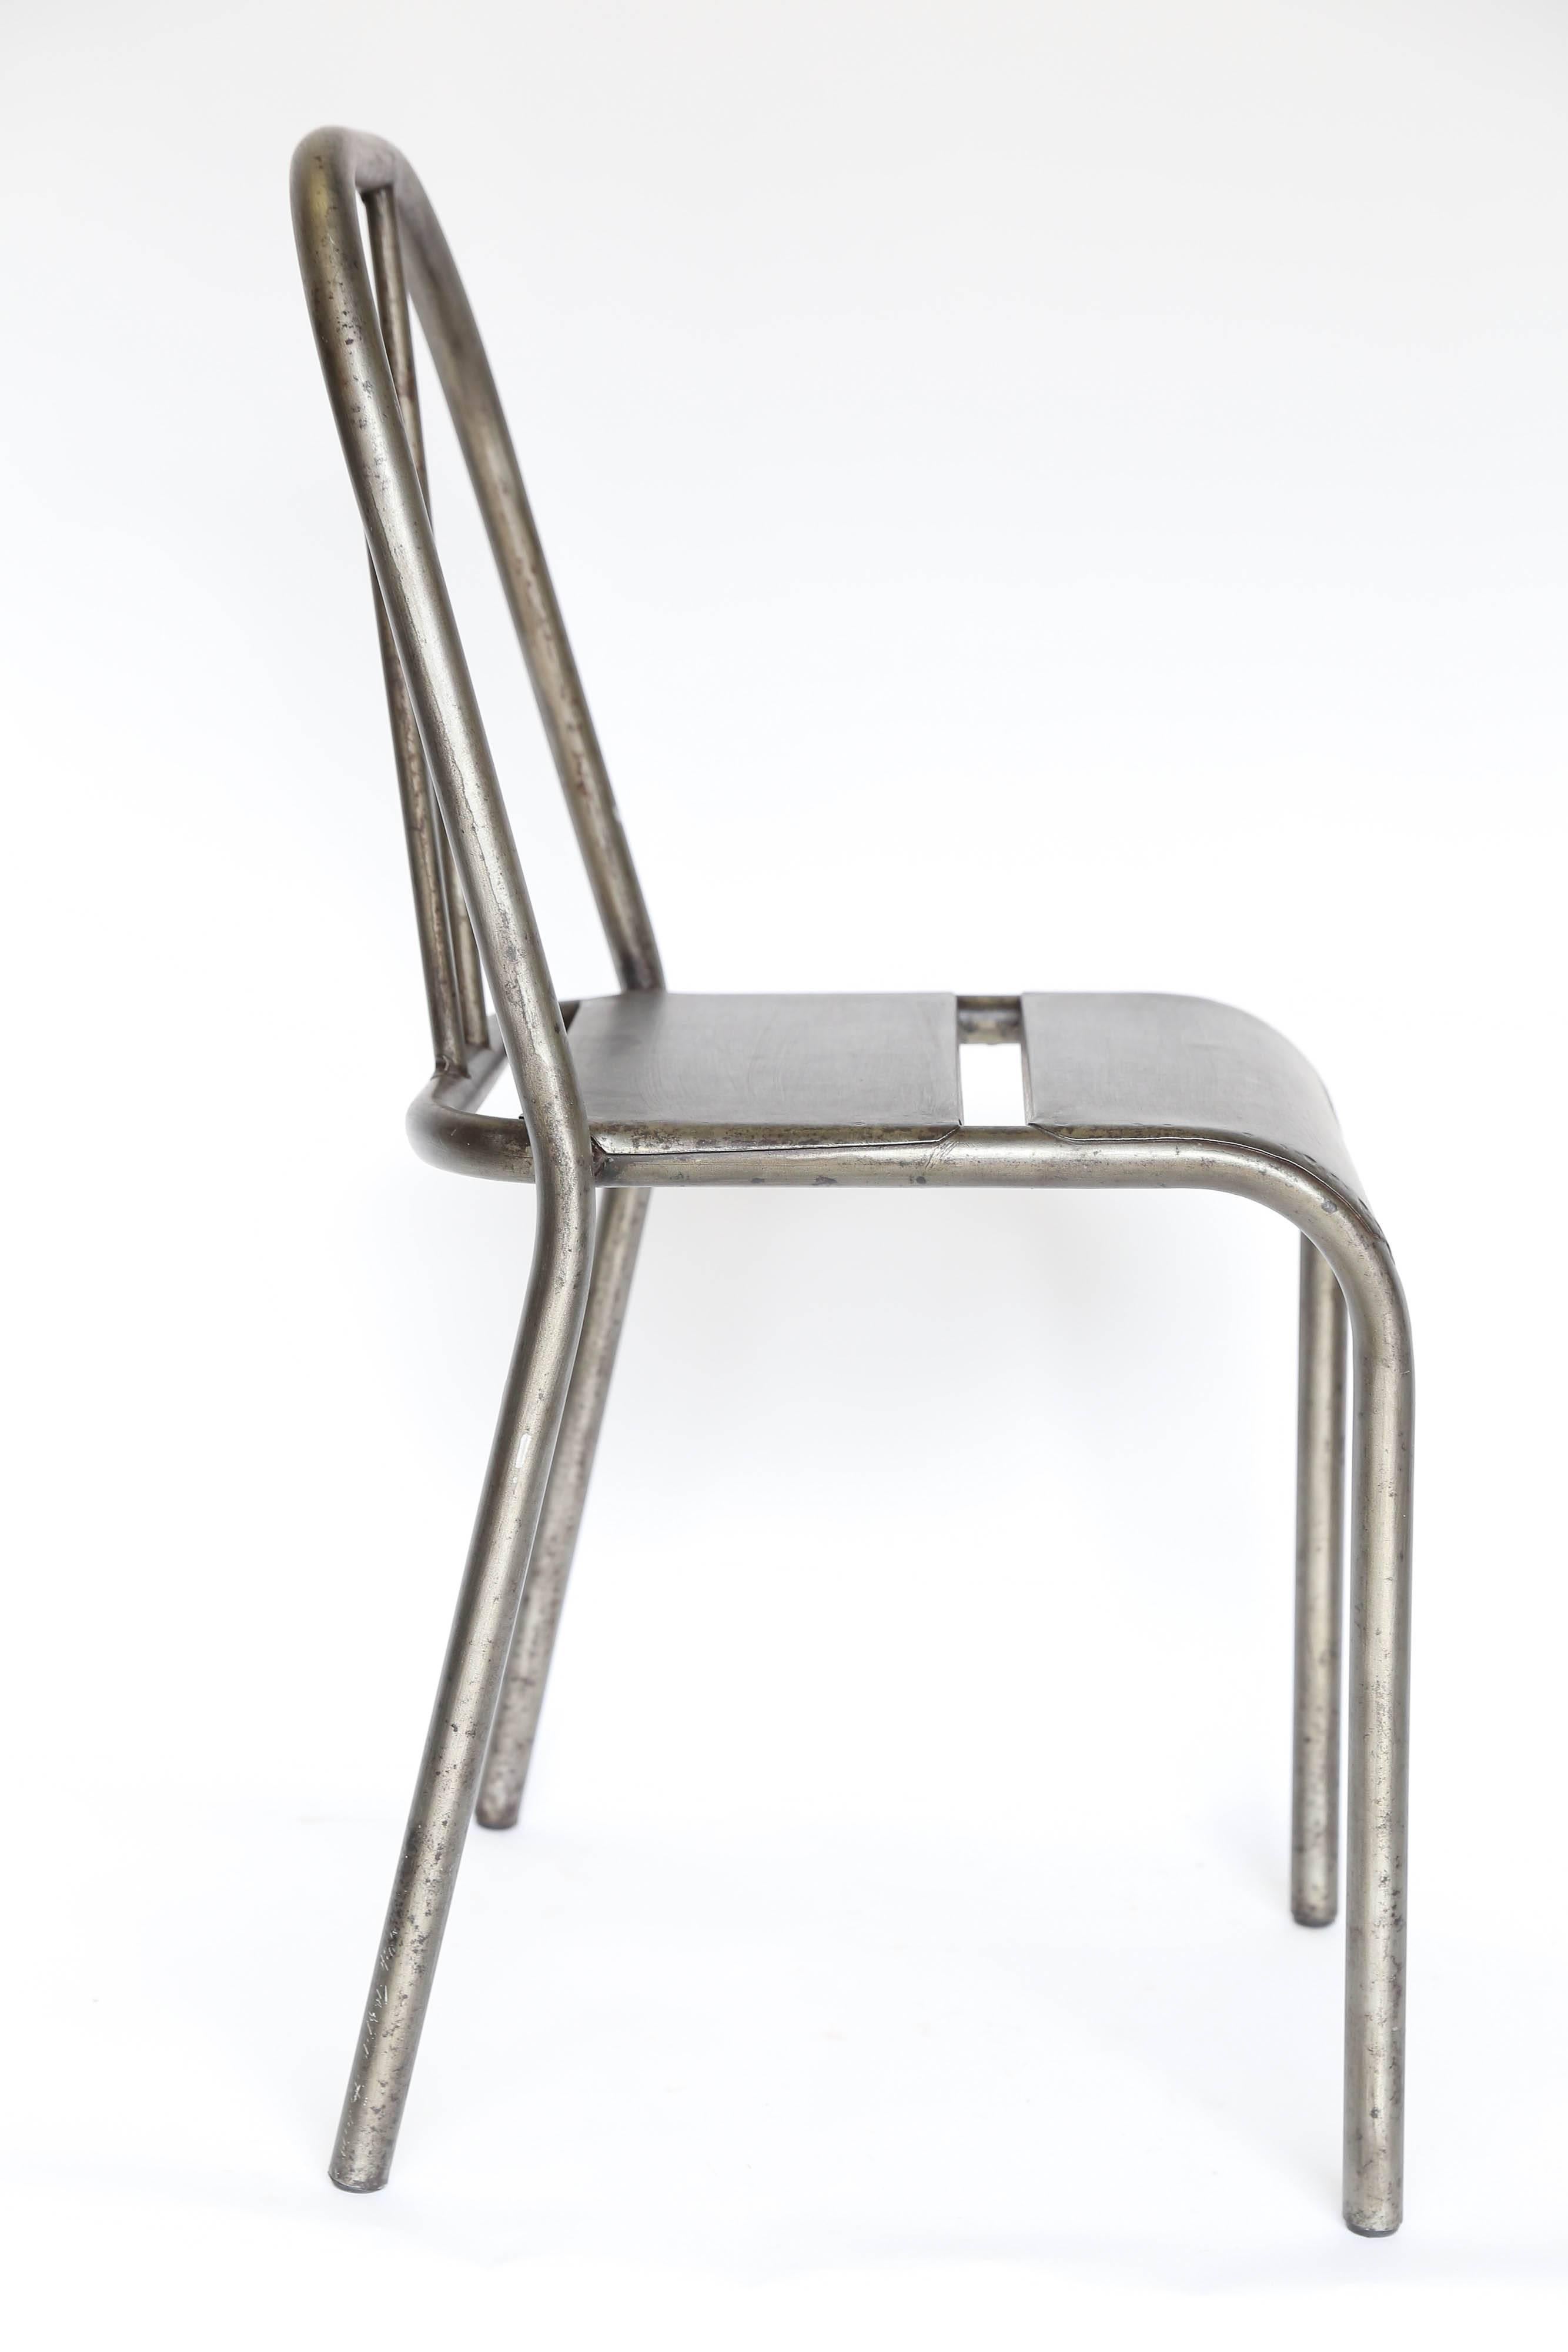 Industrial Vintage Metal Chair